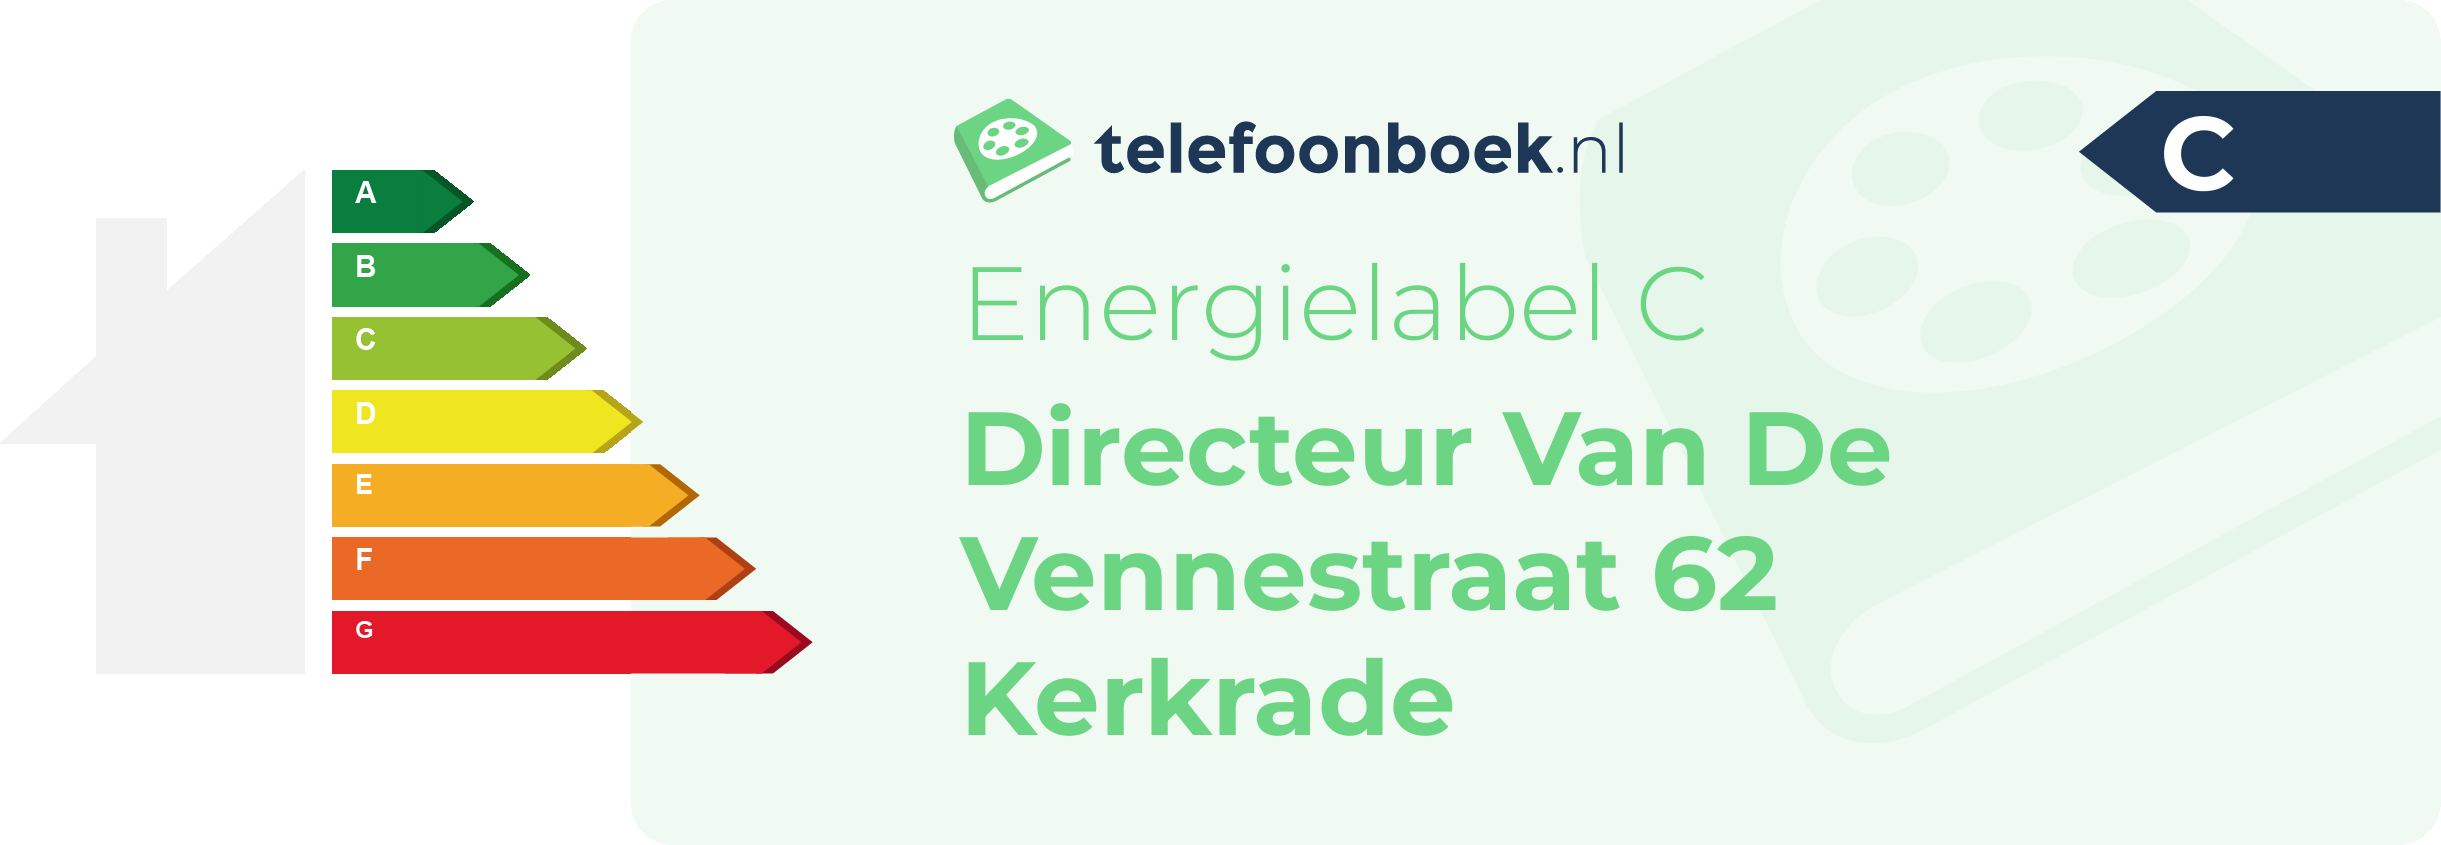 Energielabel Directeur Van De Vennestraat 62 Kerkrade